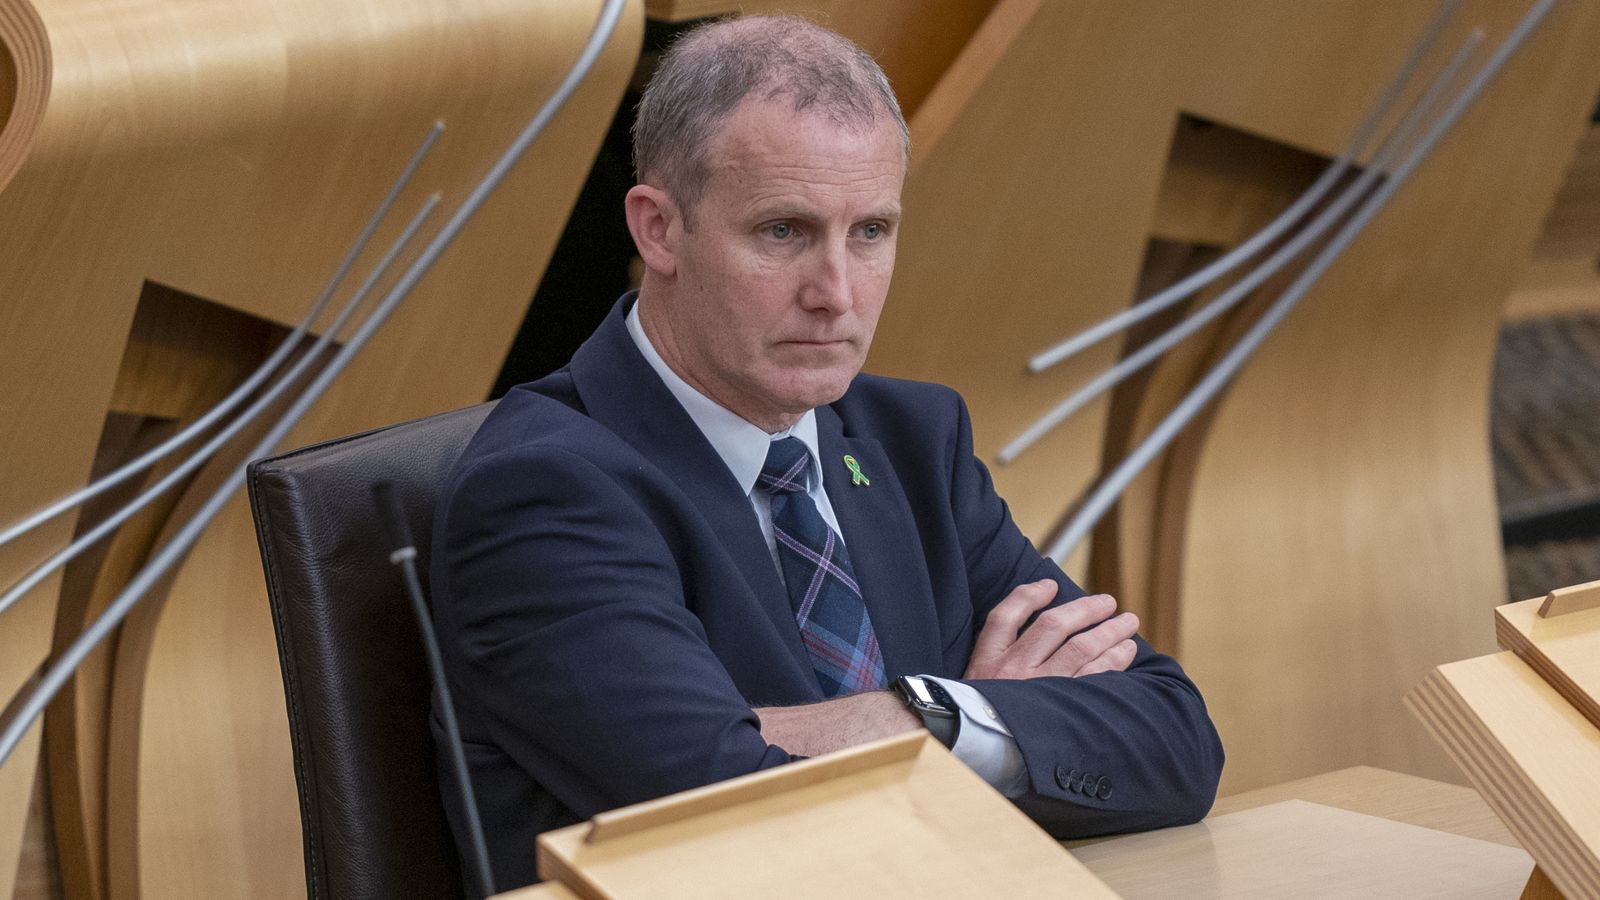 SNP MSP Майкъл Матесън е отстранен от шотландския парламент заради сметка за iPad от 11 000 паунда